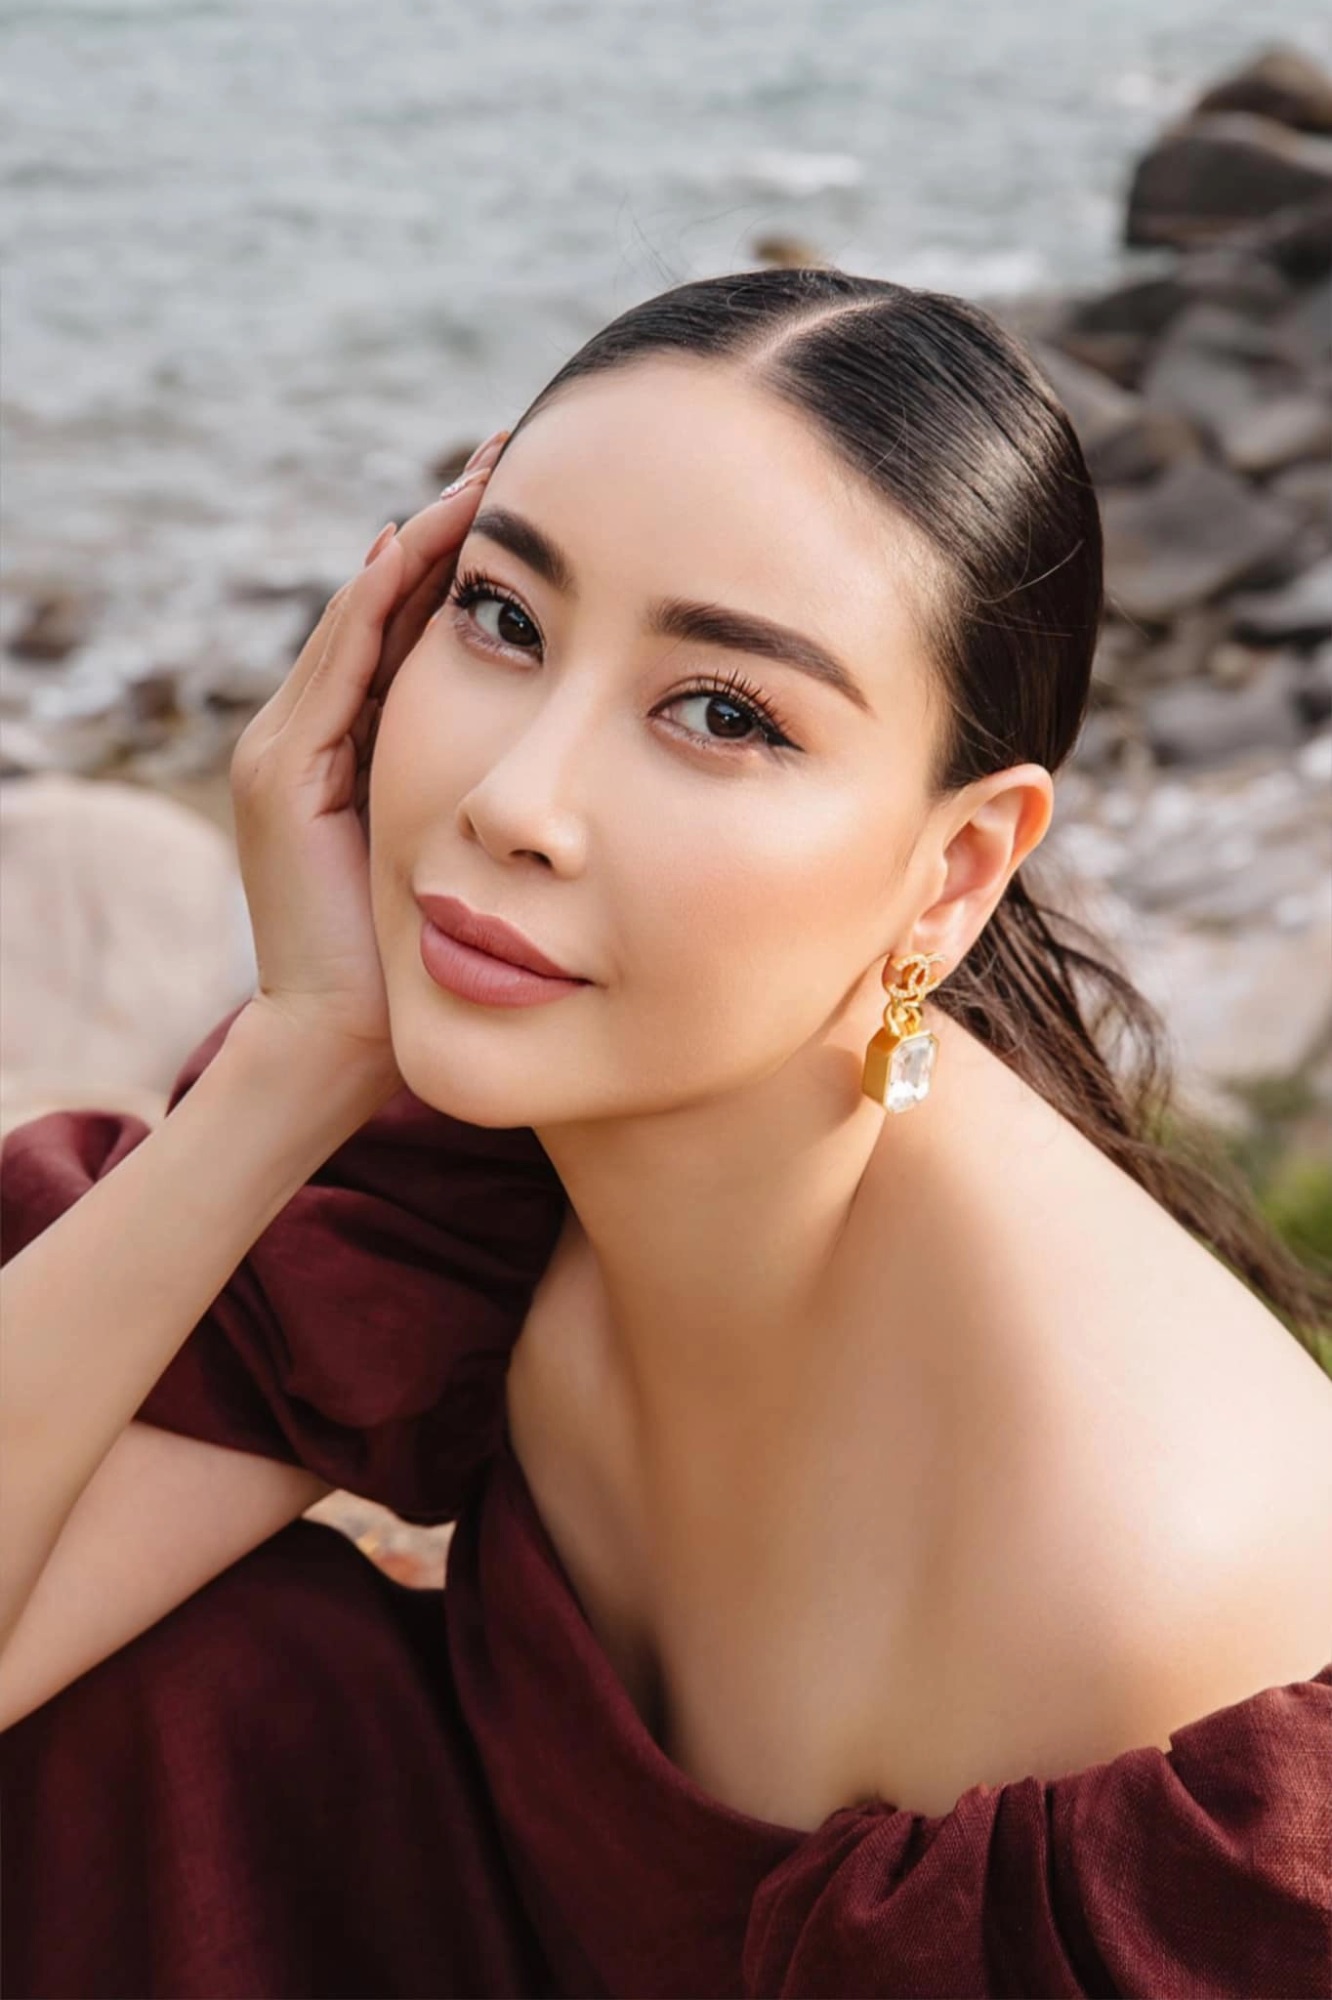 Cuộc sống viên mãn của hoa hậu Hà Kiều Anh ở tuổi U50: Sở hữu cơ ngơi hàng trăm tỷ, vẫn đắt show 'ghế nóng' các cuộc thi nhan sắc lớn - Ảnh 1